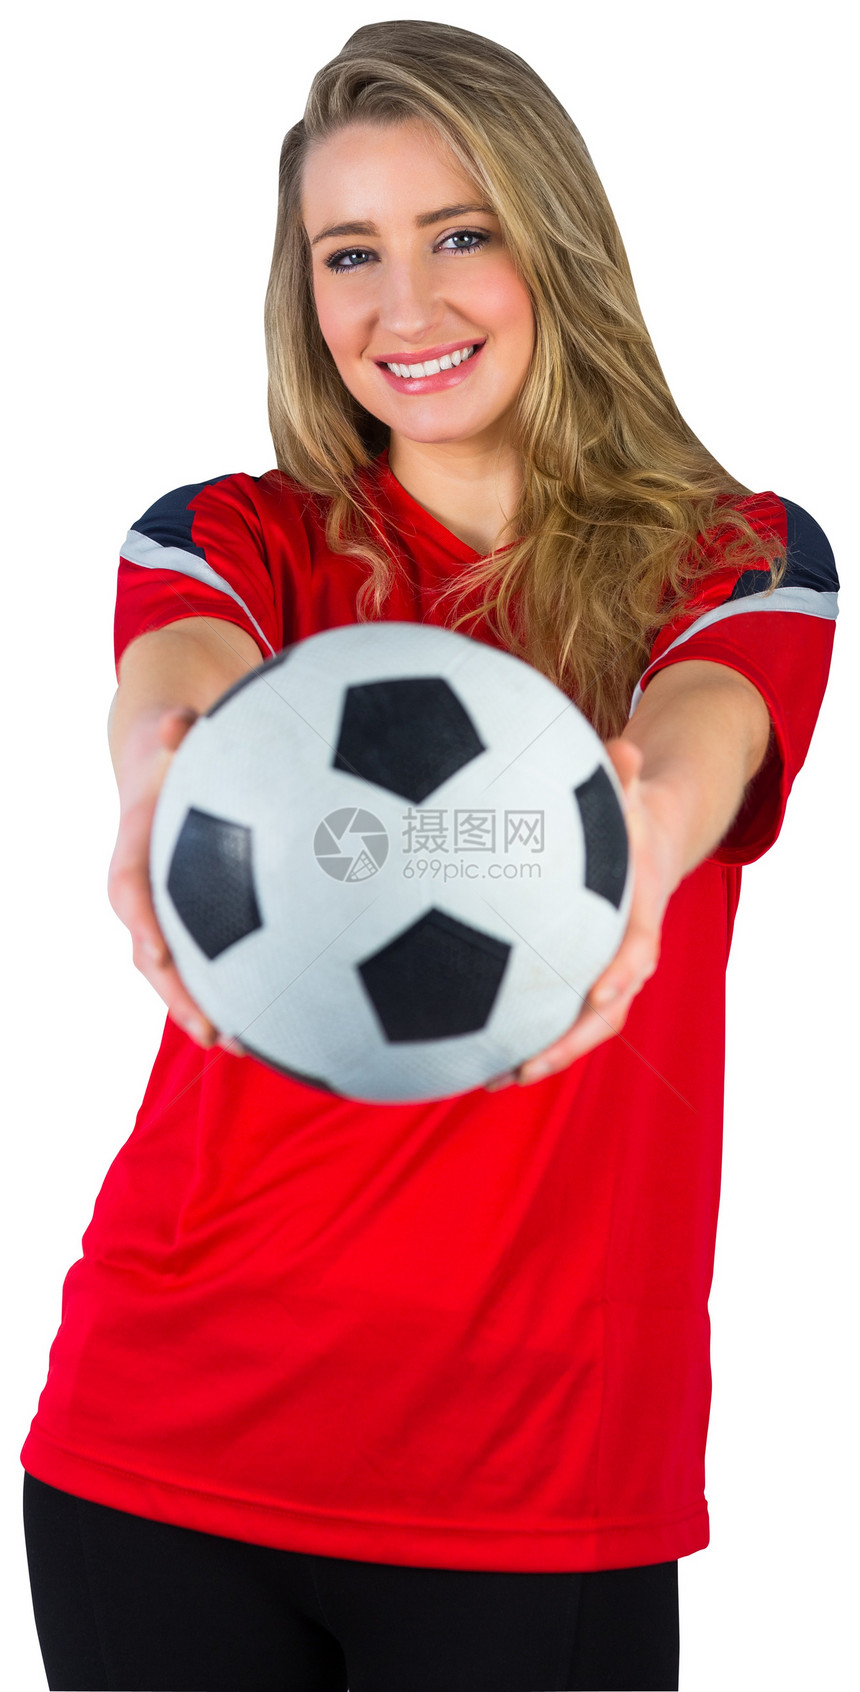 红红色的漂亮足球球迷影棚世界胜利扇子杯子女性女士喜悦微笑获奖图片